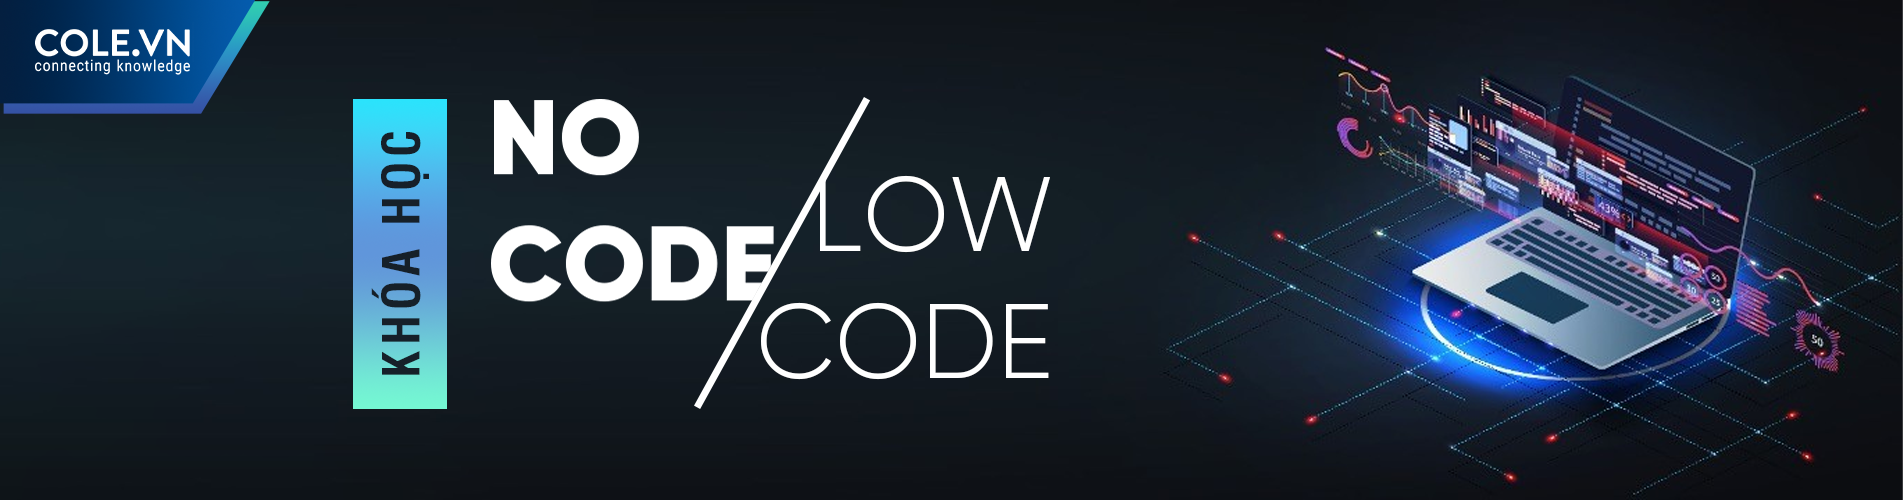 No code Low Code – Giải pháp tối ưu hóa cho doanh nghiệp vừa và nhỏ